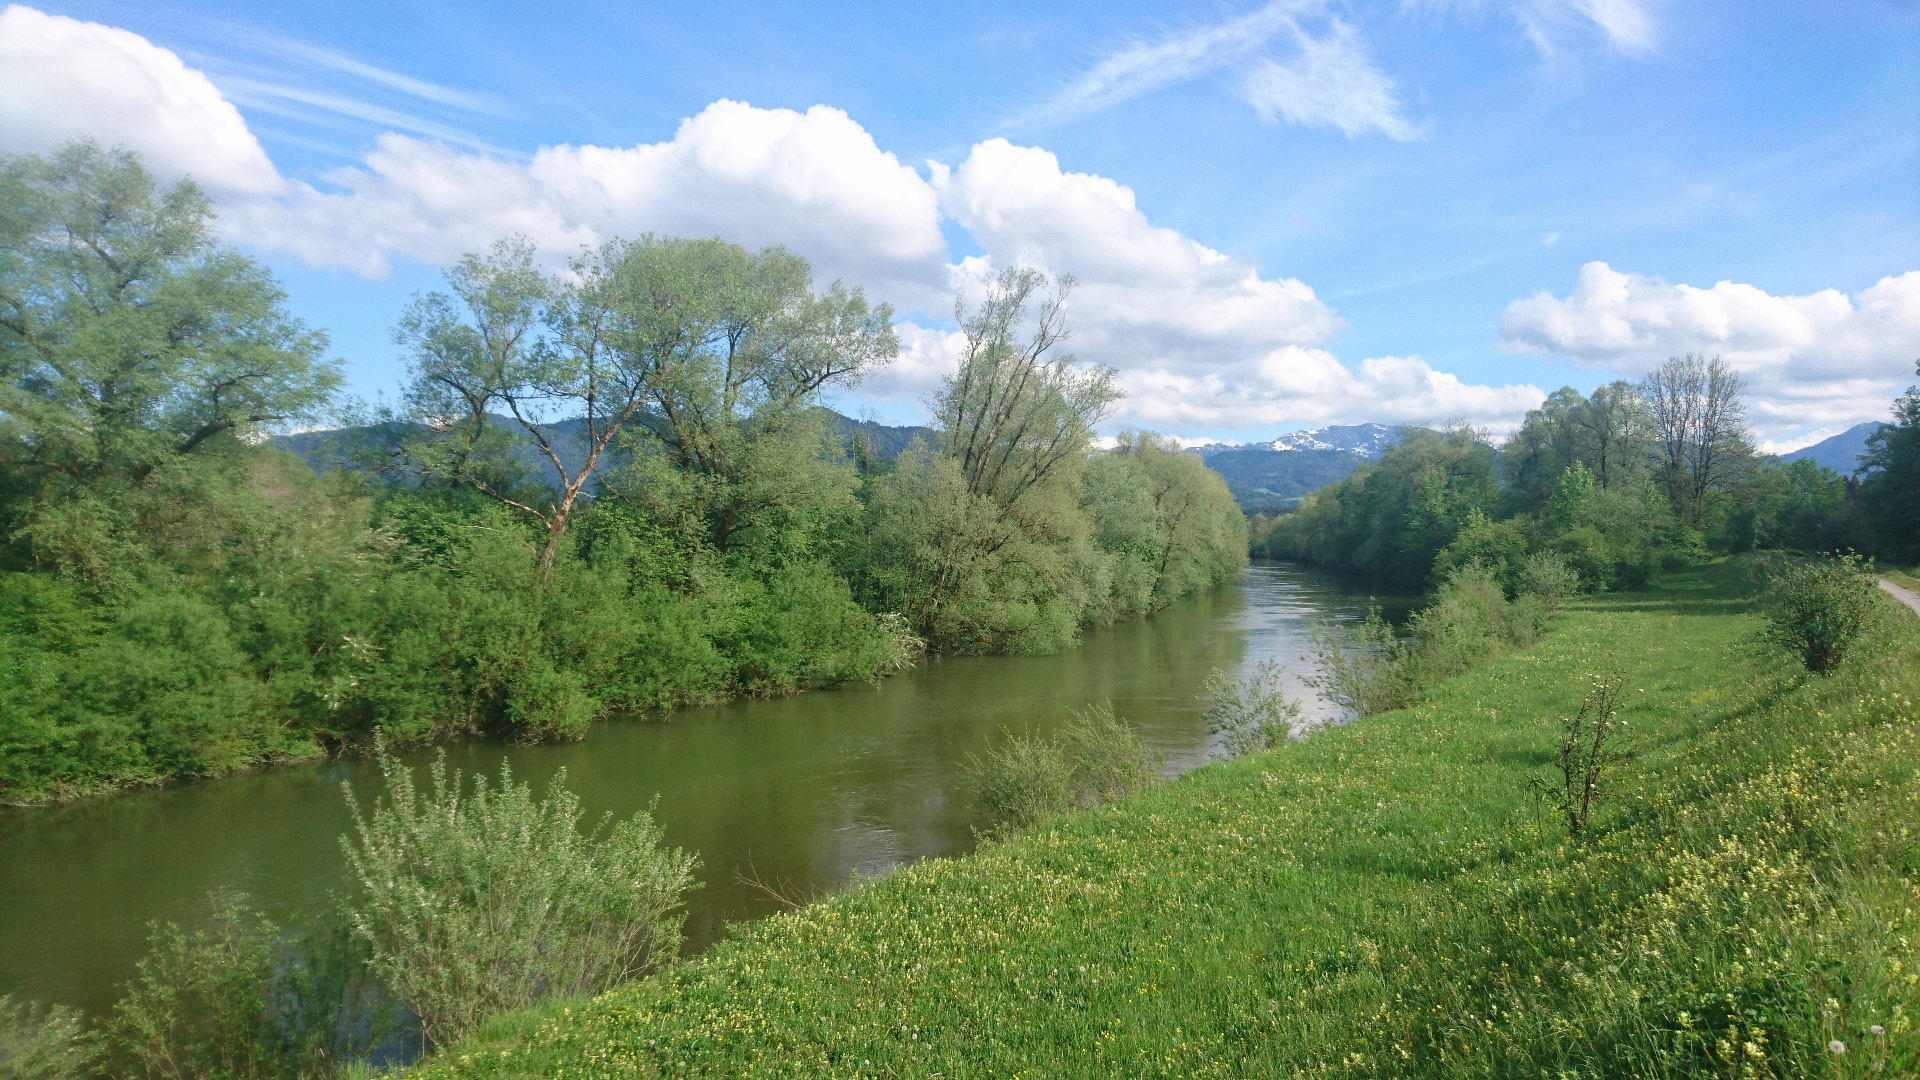 Landratsamts GAP wird auch darauf verwiesen, dass die Wasserentnahme aus der Loisach und Weiterabgabe an die SWM in ein geschütztes Feuchtgebiet im Loisachtal eingreift und somit mit dem Naturschutz